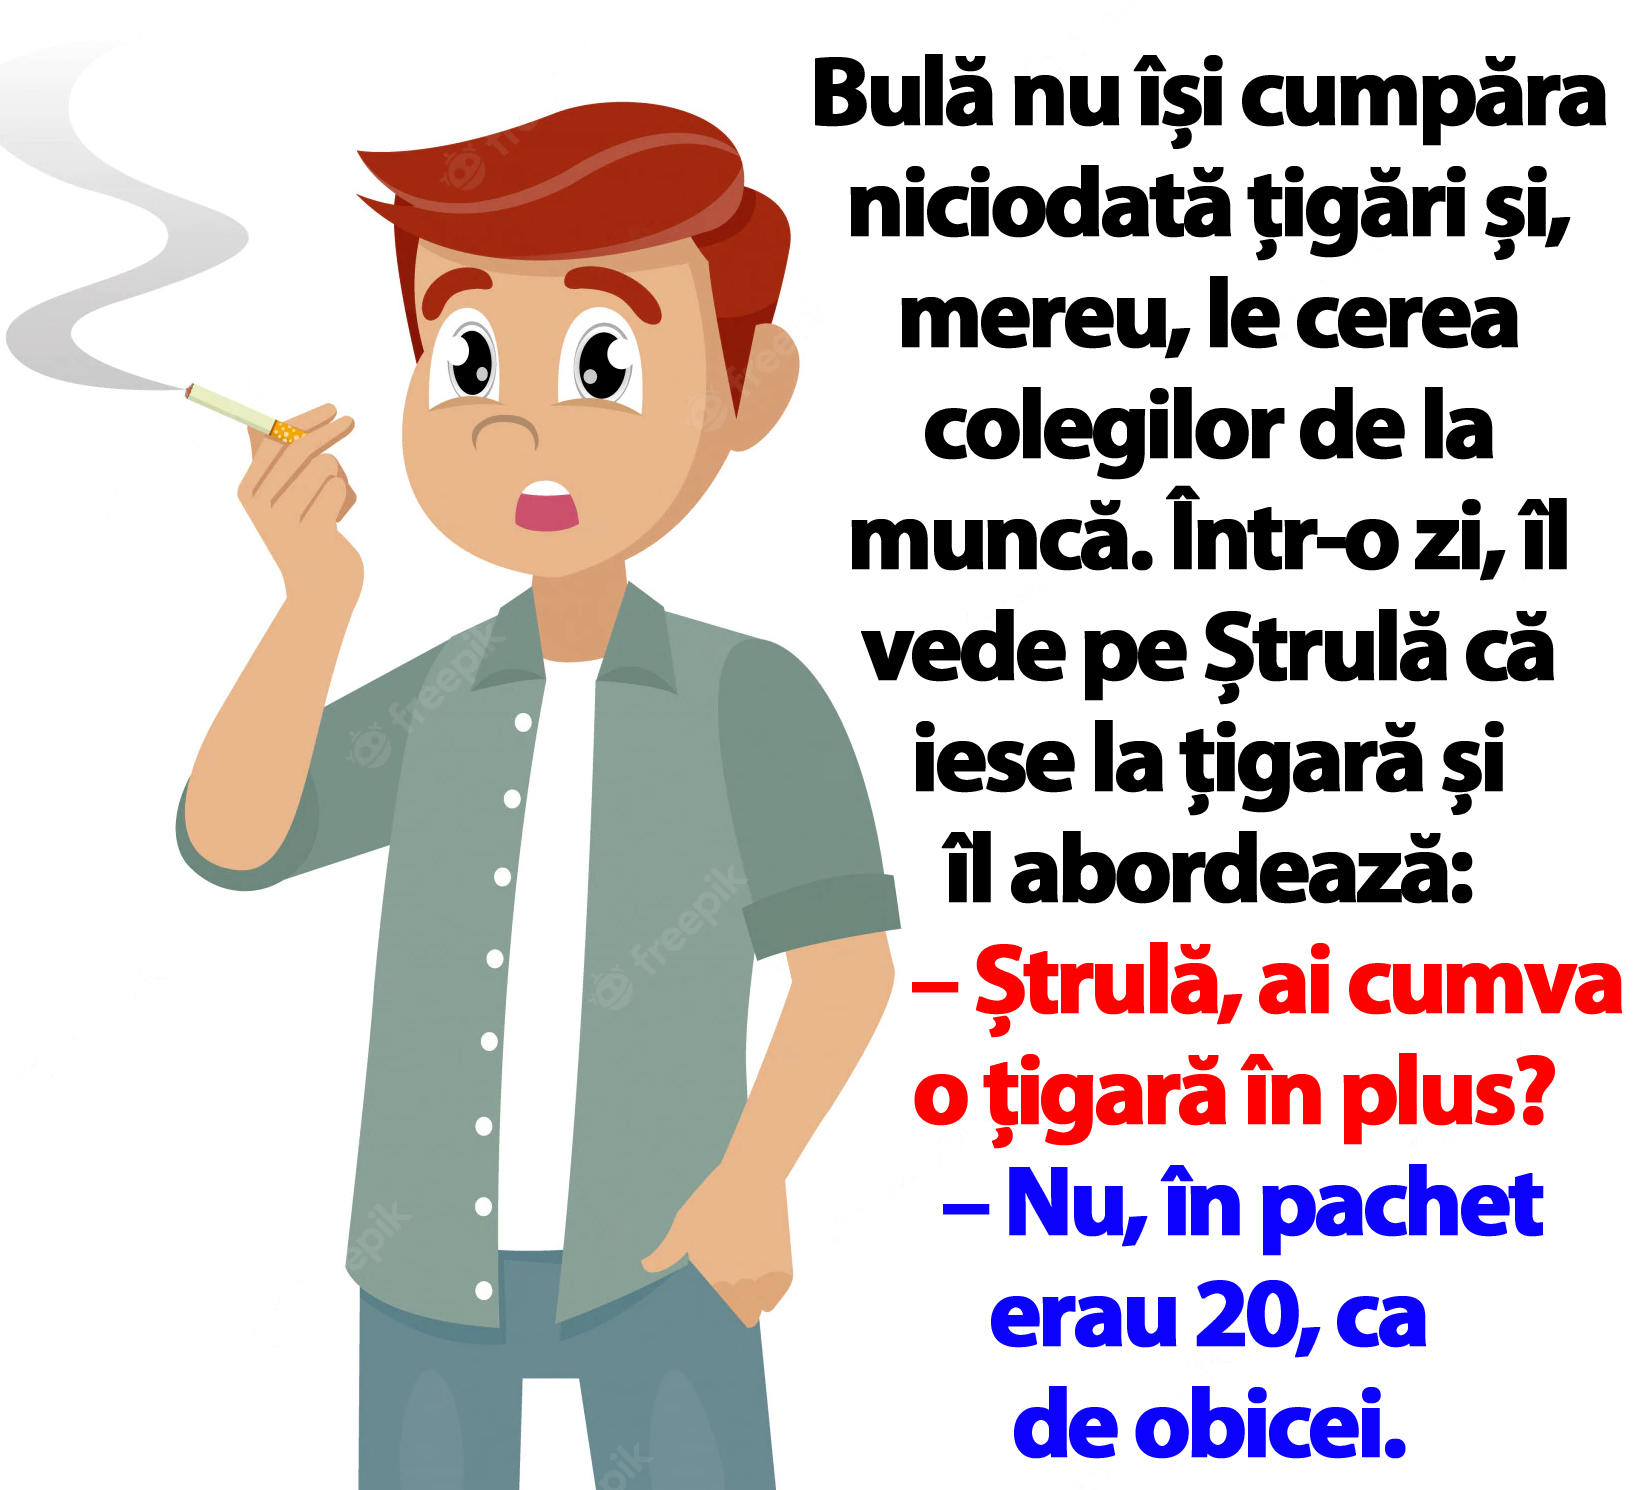 BANC | Bulă nu își cumpăra niciodată țigări și, mereu, le cerea colegilor de la muncă